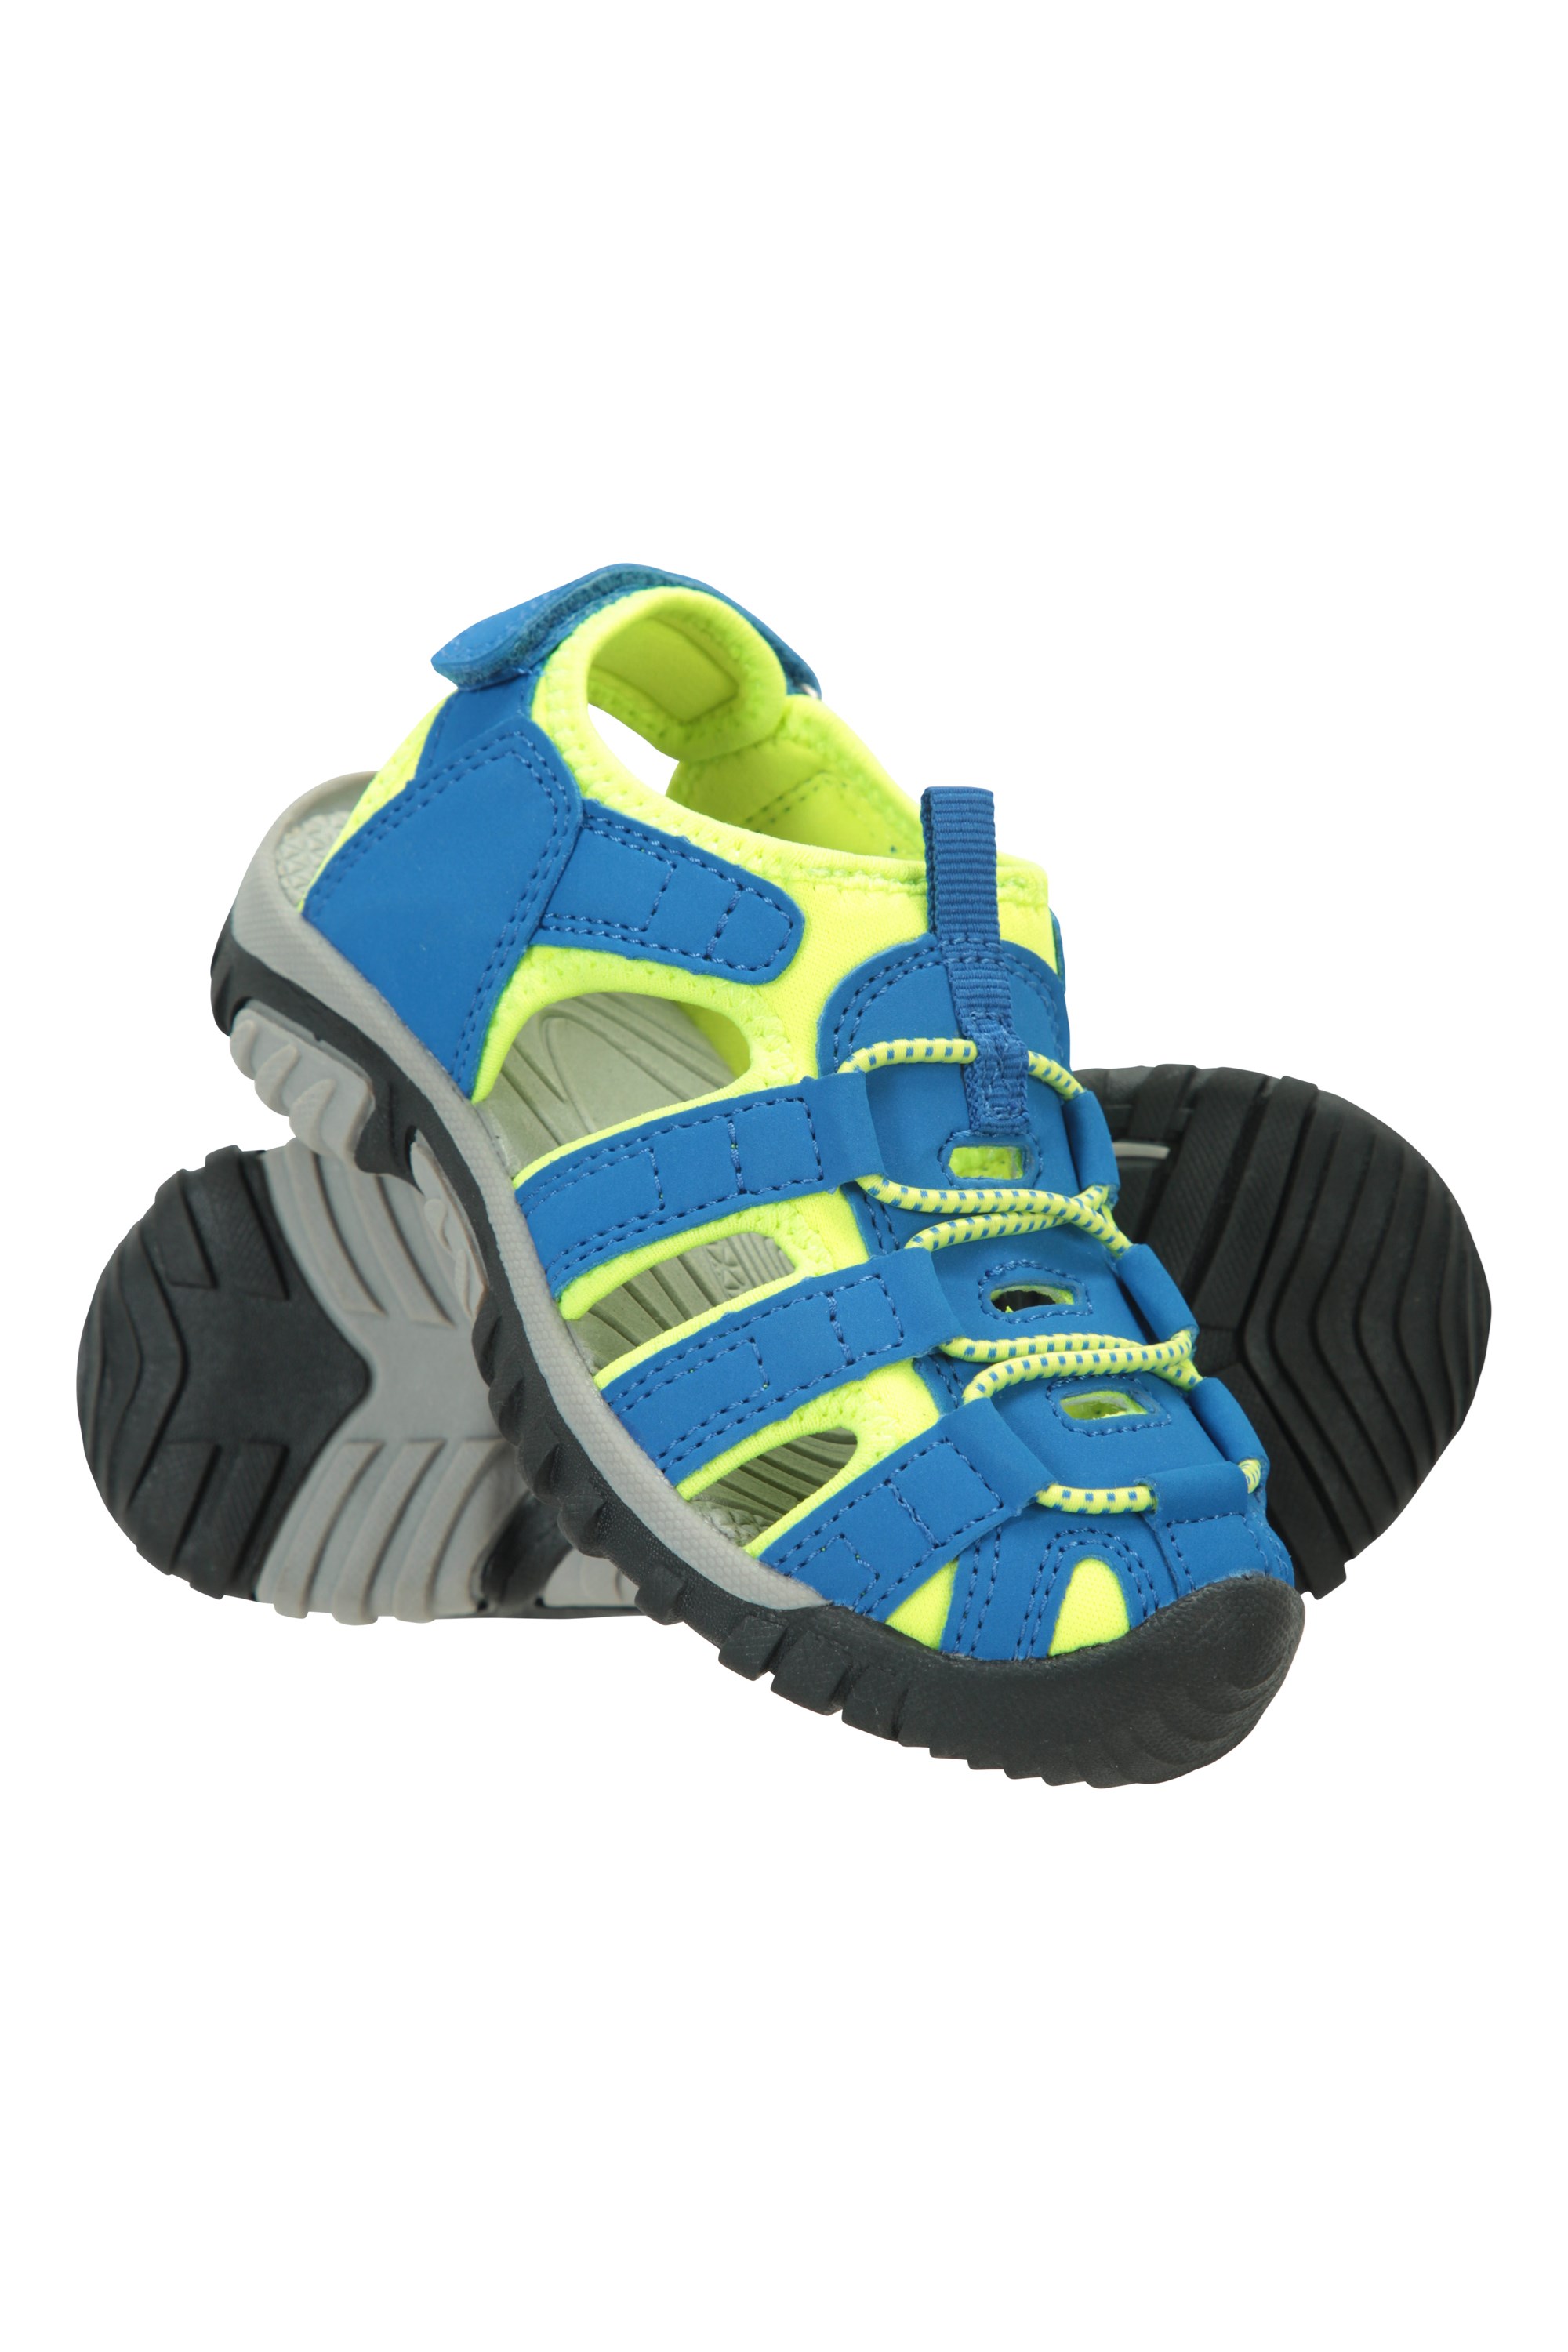 Sandalias de Neopreno Niños & Niñas Caminar fáciles de Poner Mountain Warehouse Sandalias de Senderismo Coastal Niños Zapatos de Verano para la Playa 